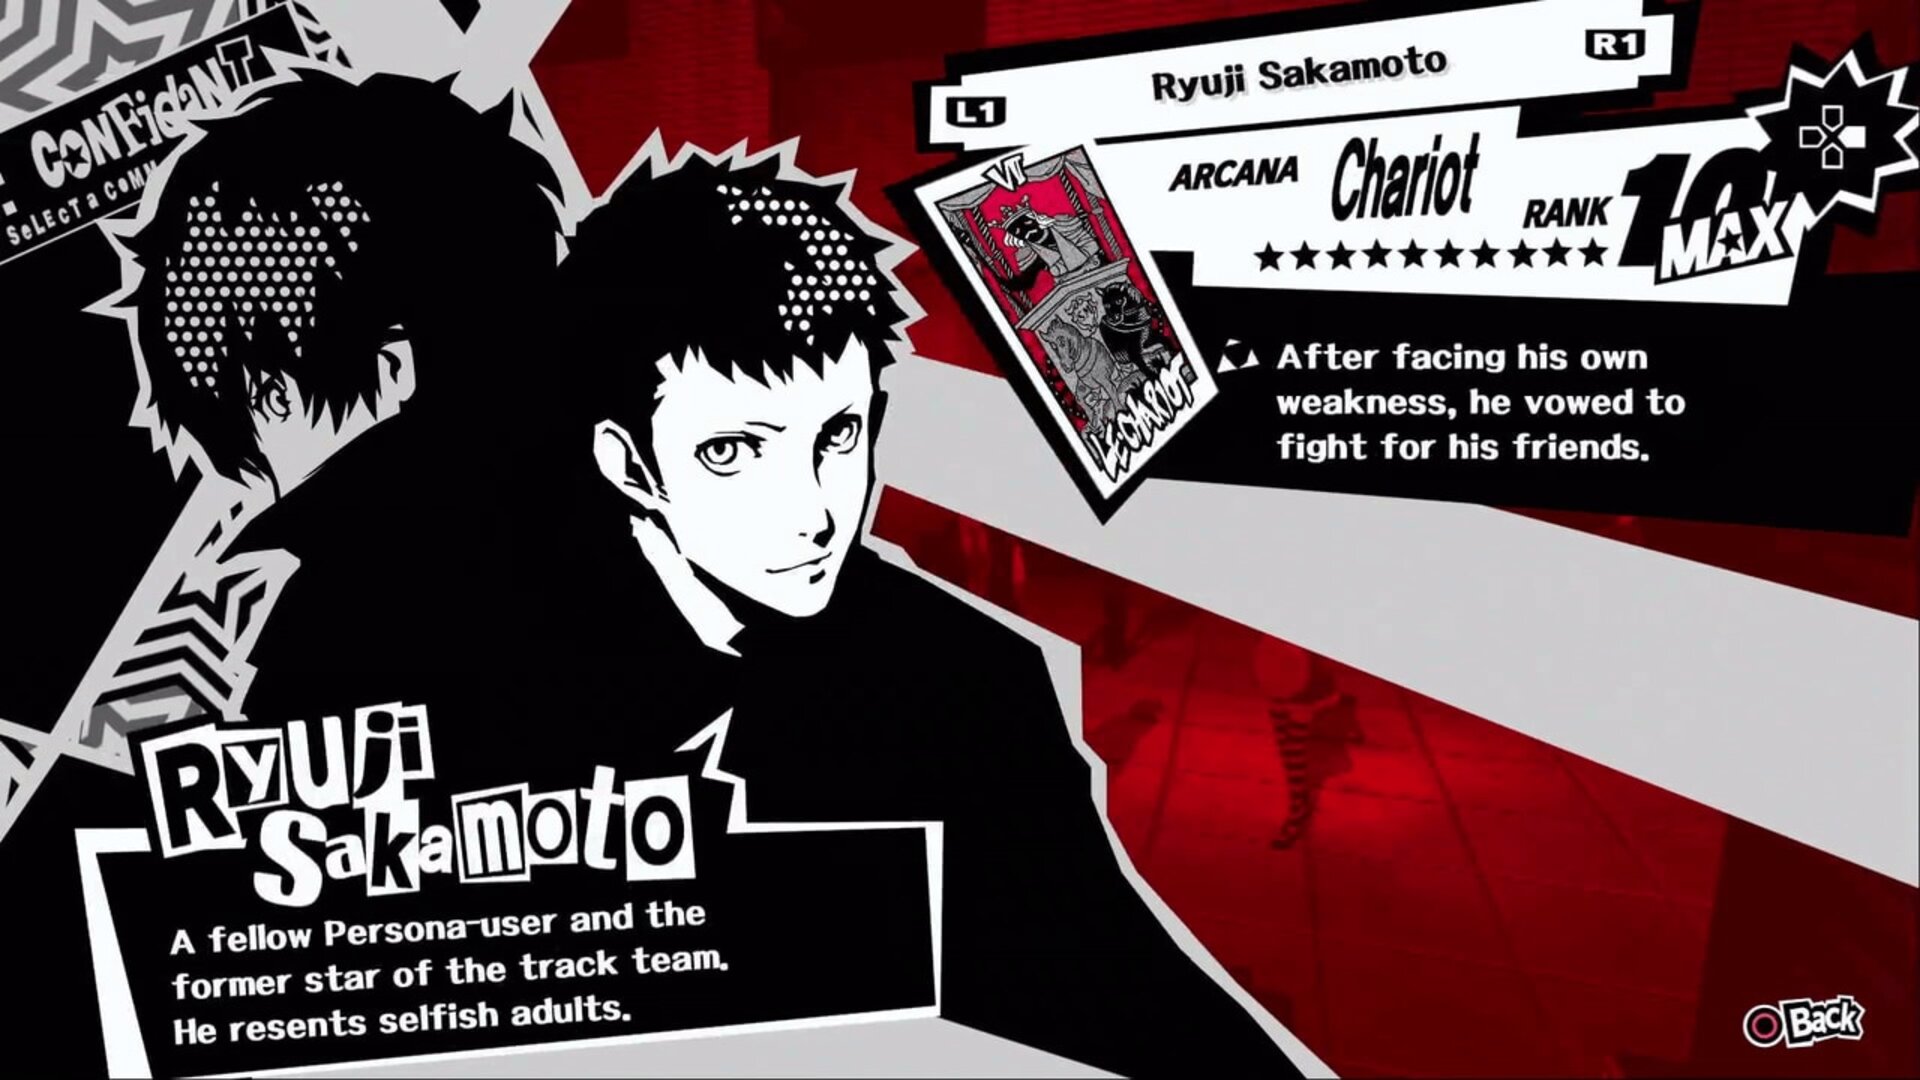 Persona 5 Royal Ryuji Sakamoto (Chariot) Confidant Guide